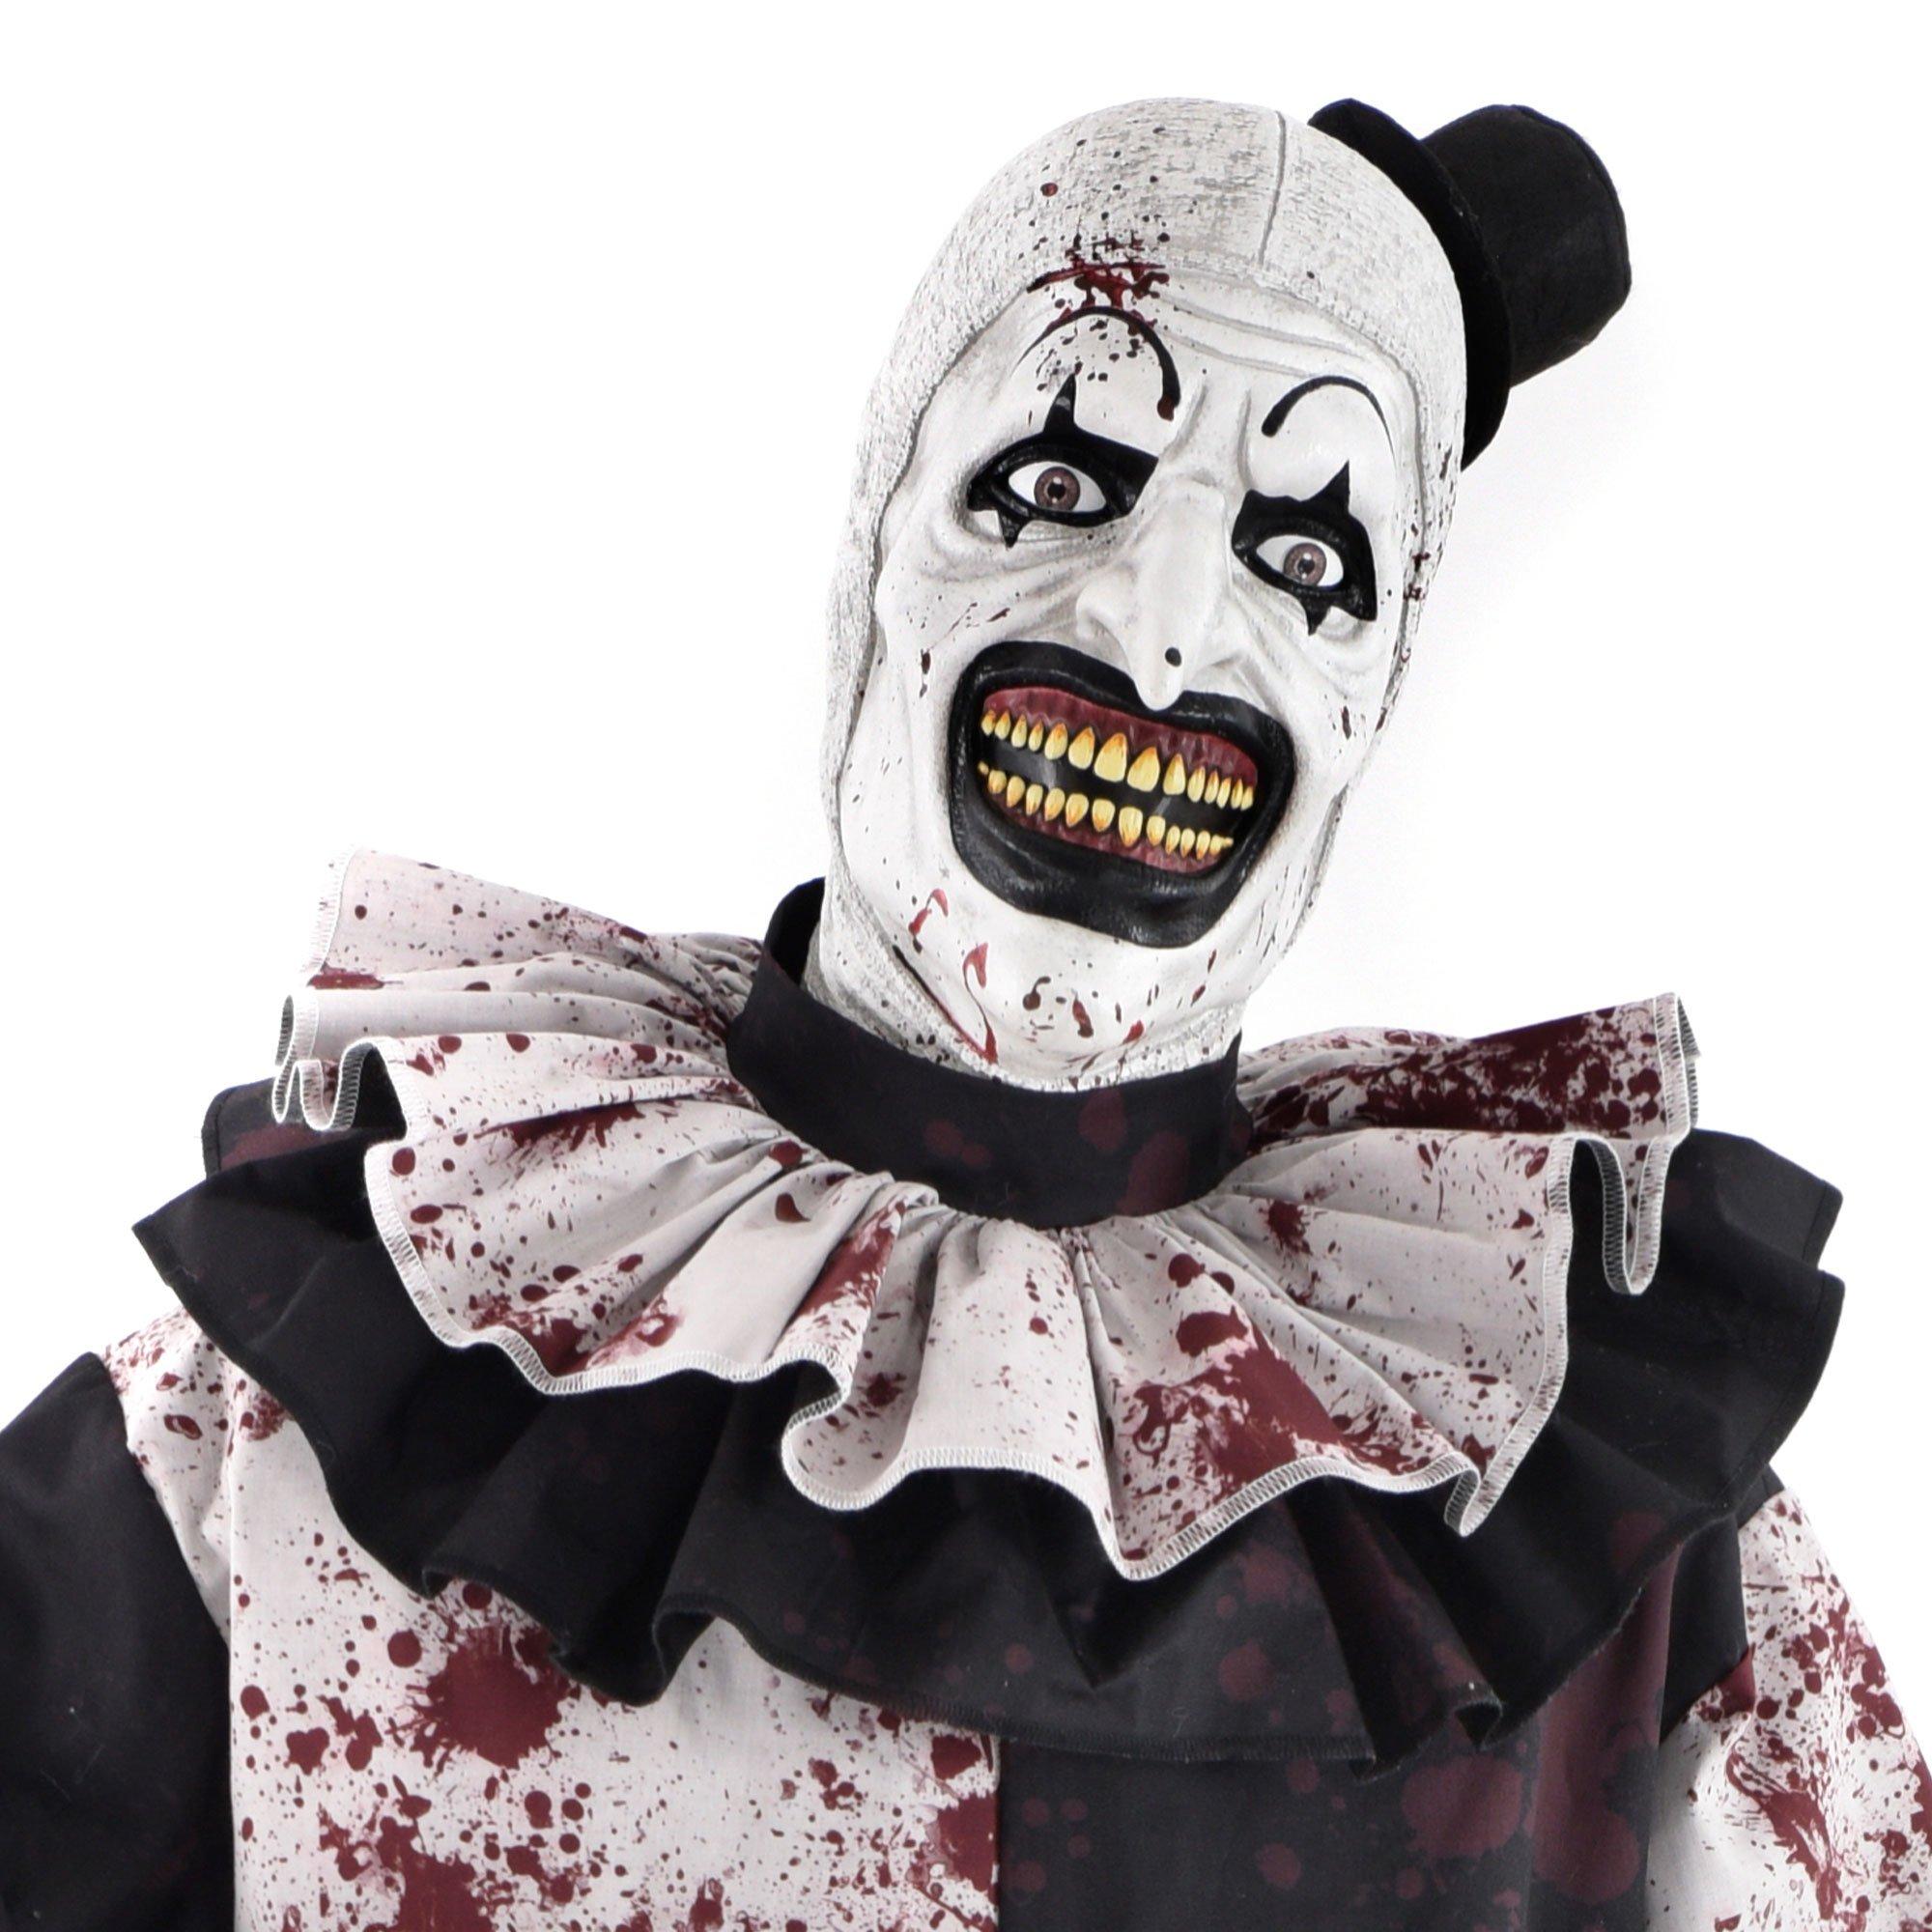 Animatronic Art the Clown, 6.58ft - Terrifier Halloween Decoration